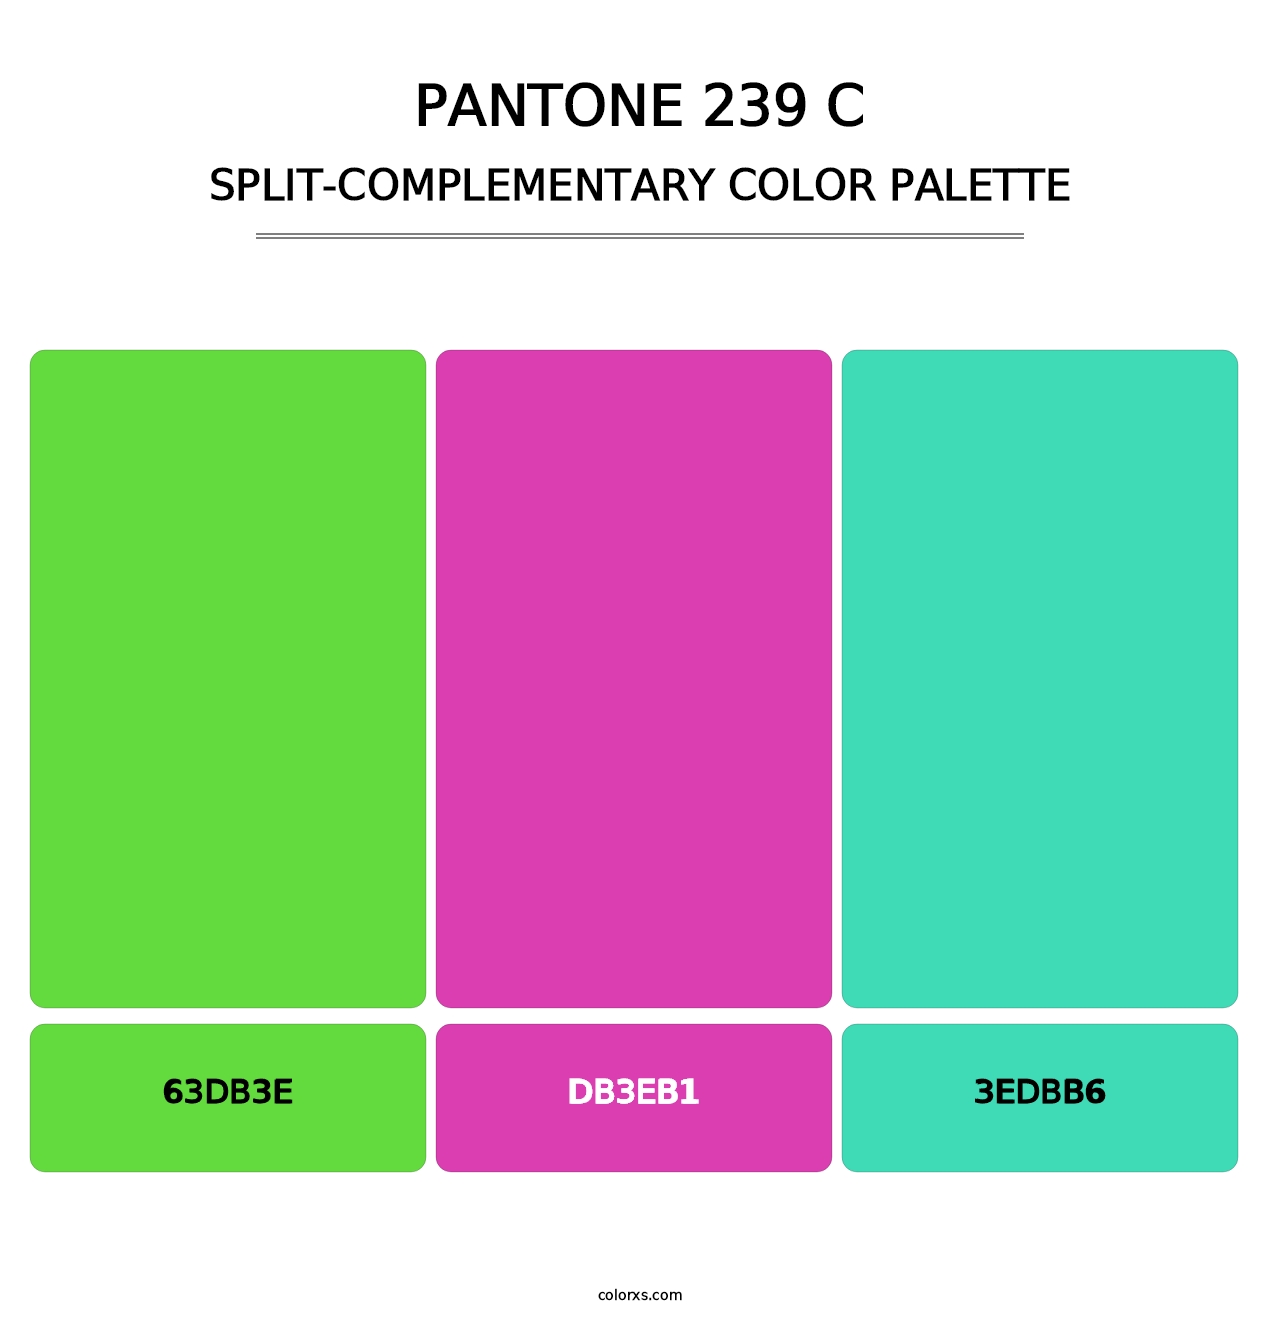 PANTONE 239 C - Split-Complementary Color Palette